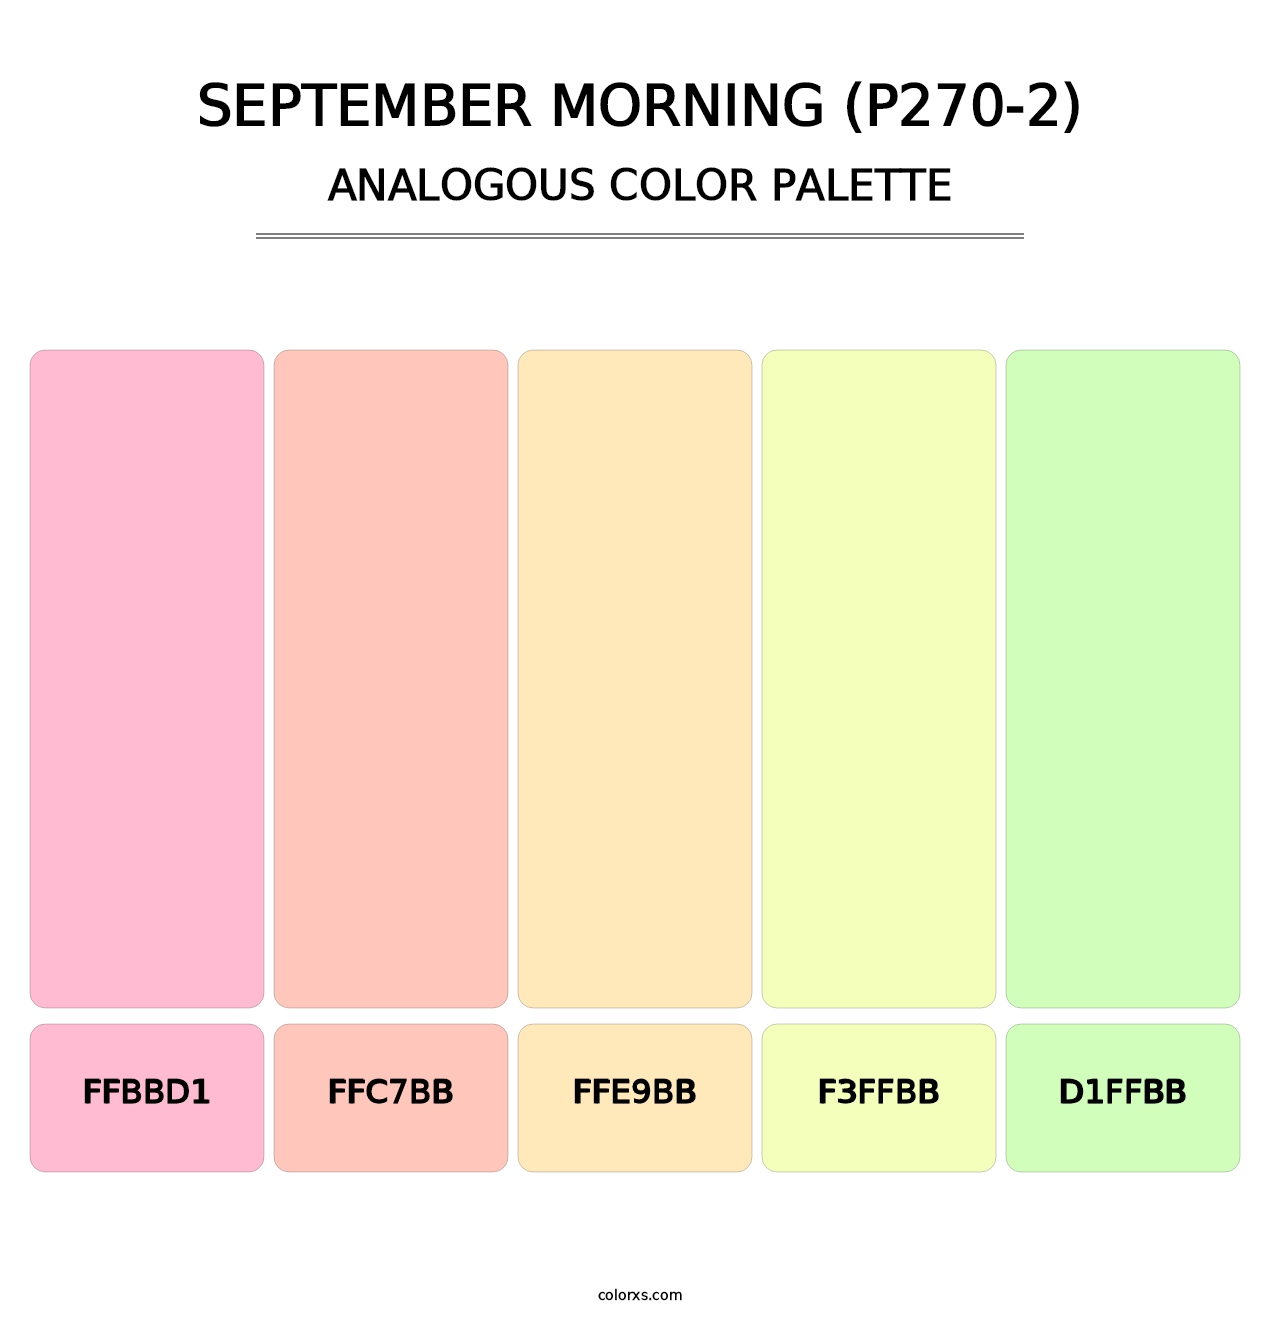 September Morning (P270-2) - Analogous Color Palette